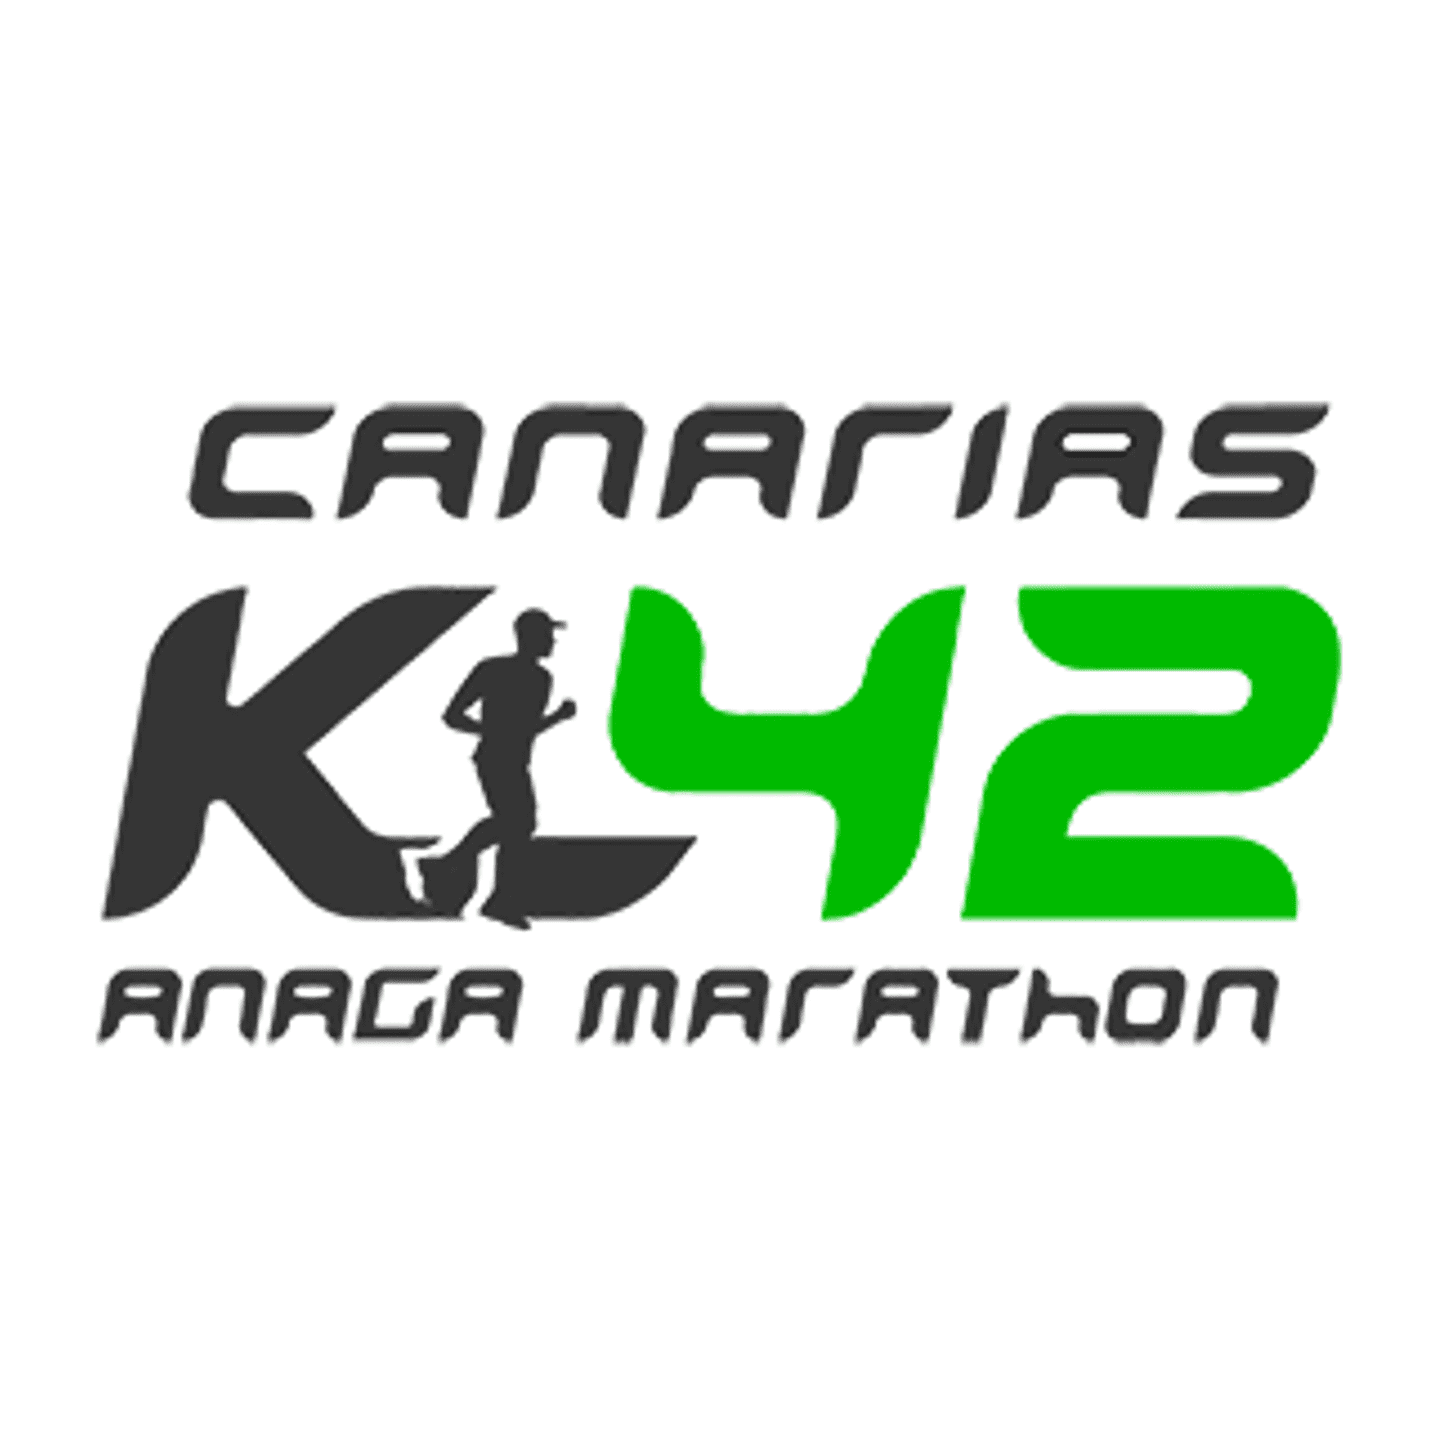 Logo-K42 Canarias Anaga